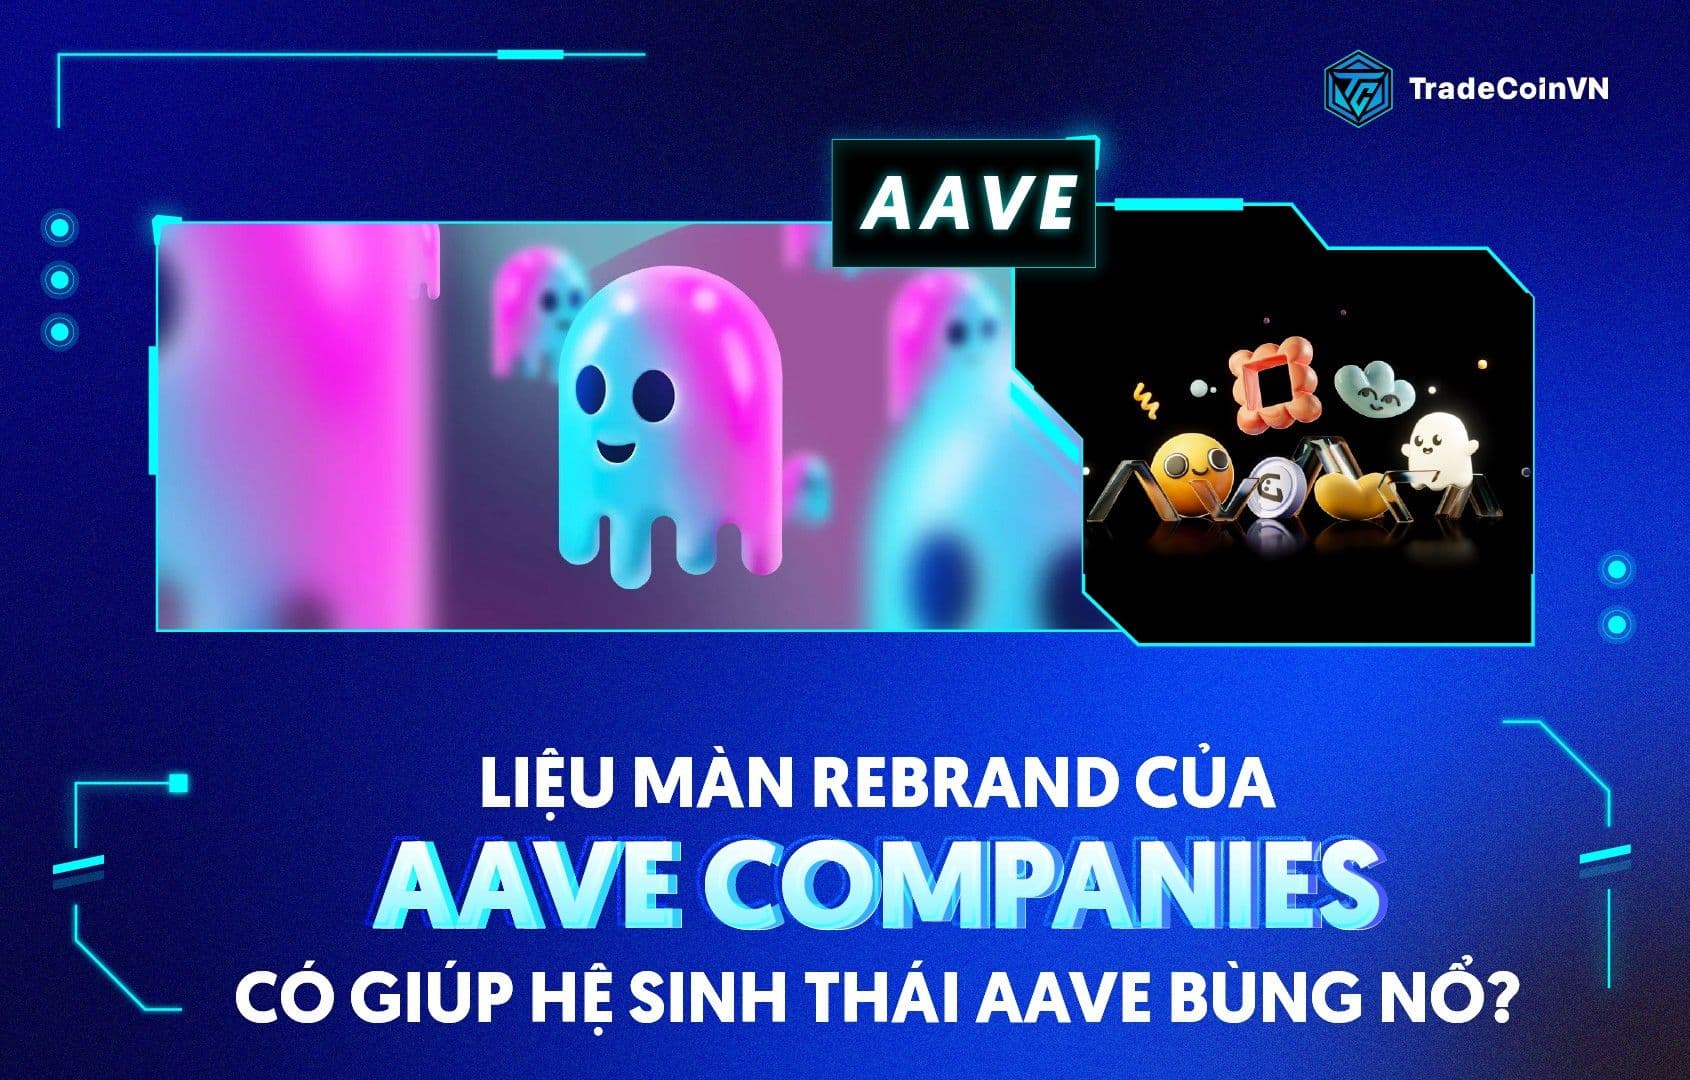 Aave Companies rebrand thành Avara, liệu định hướng mới có giúp hệ sinh thái Aave bùng nổ trong tương lai?